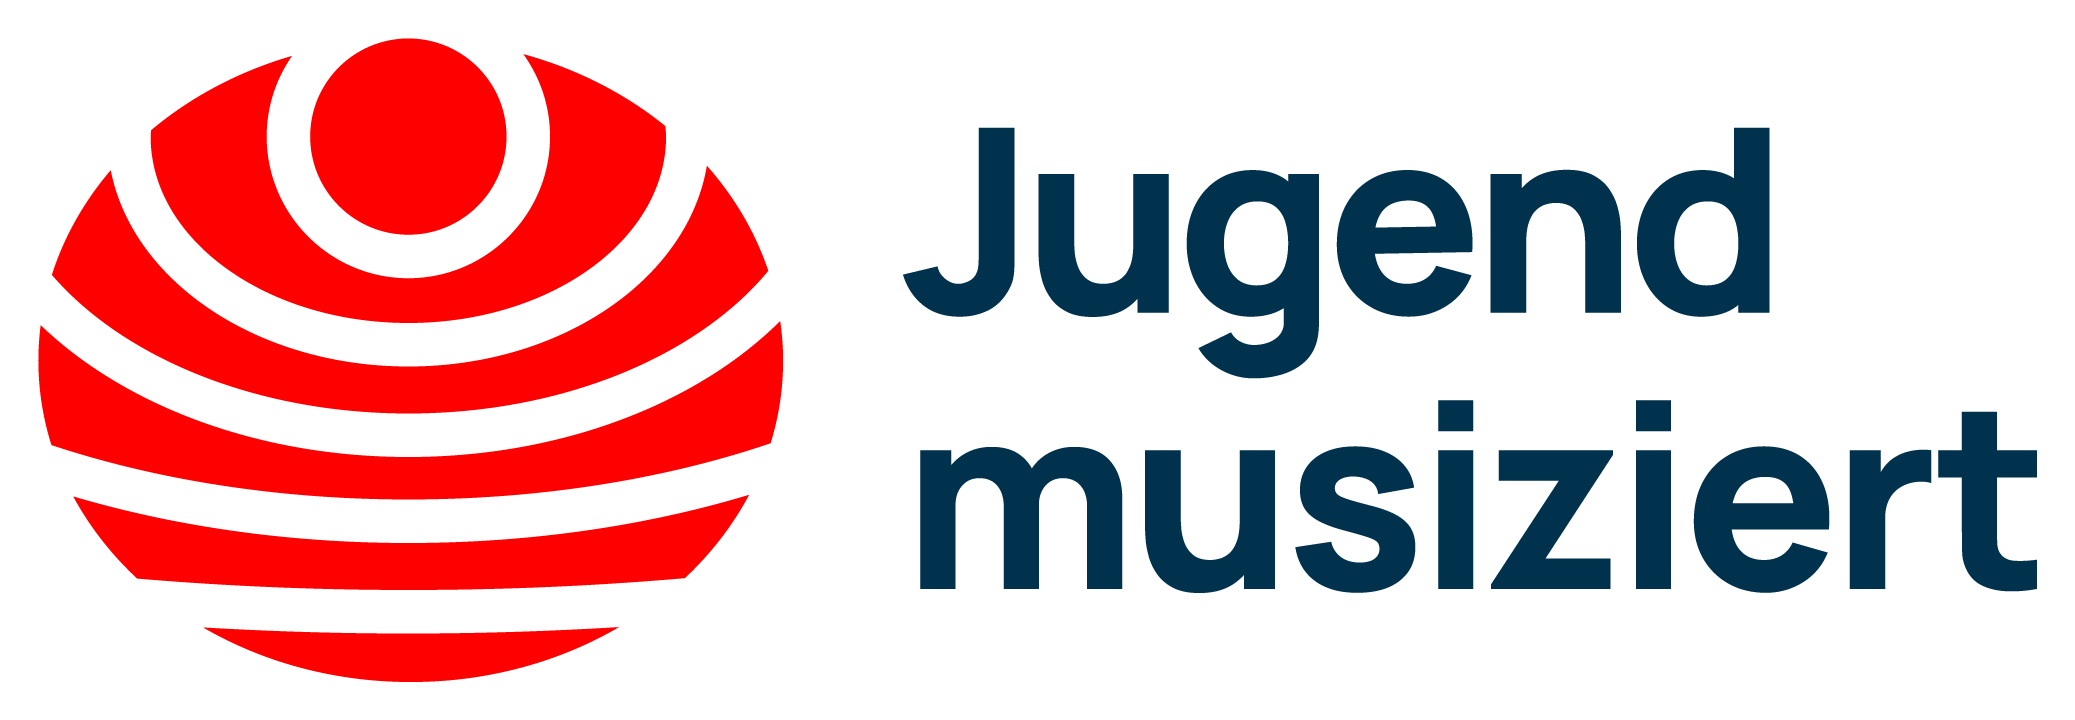 Bild Logo Jugend musiziert